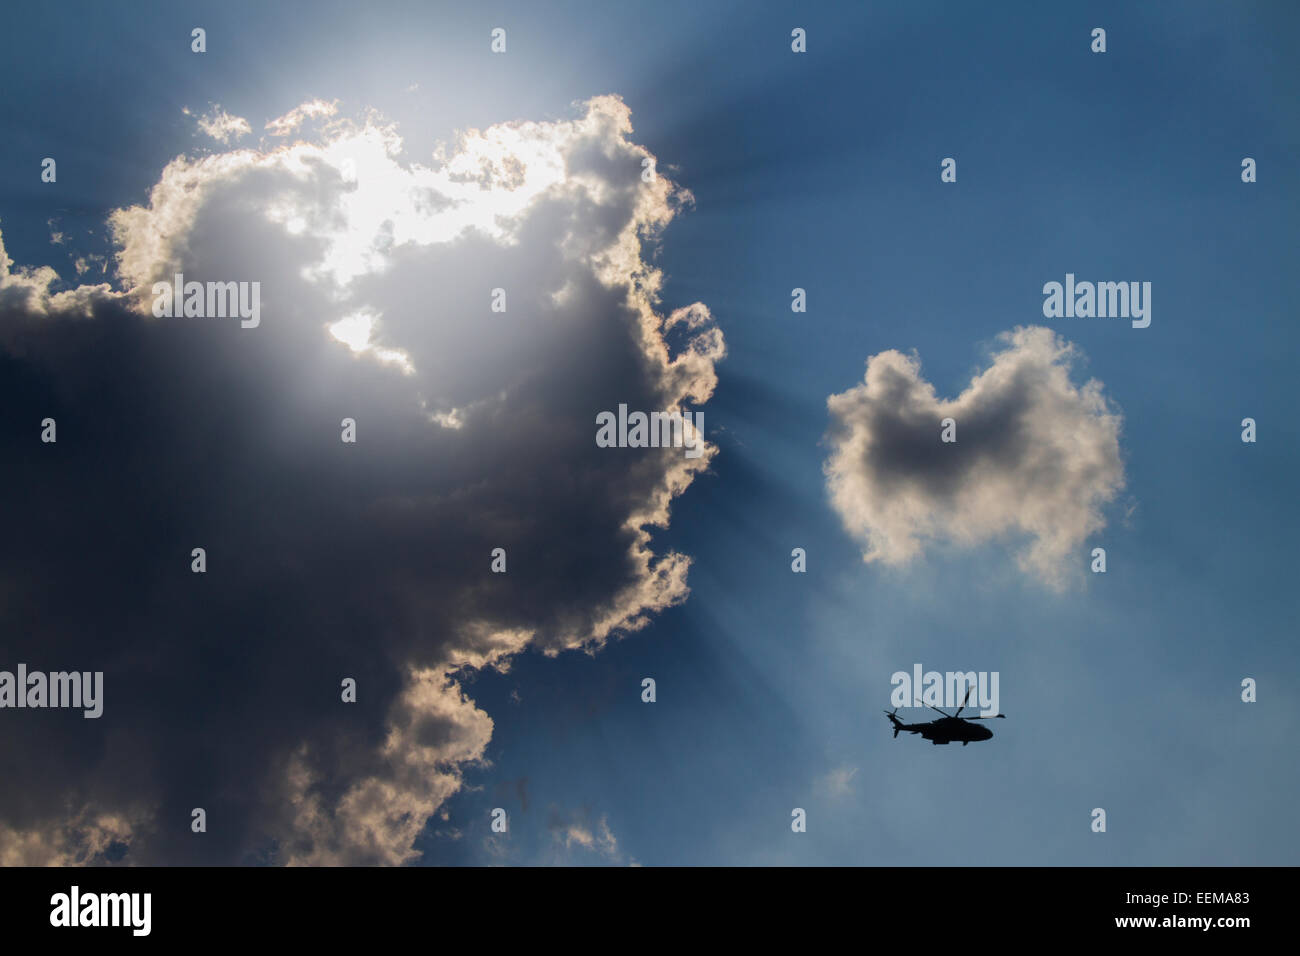 Low angle view of hélicoptère volant à ciel nuageux Banque D'Images